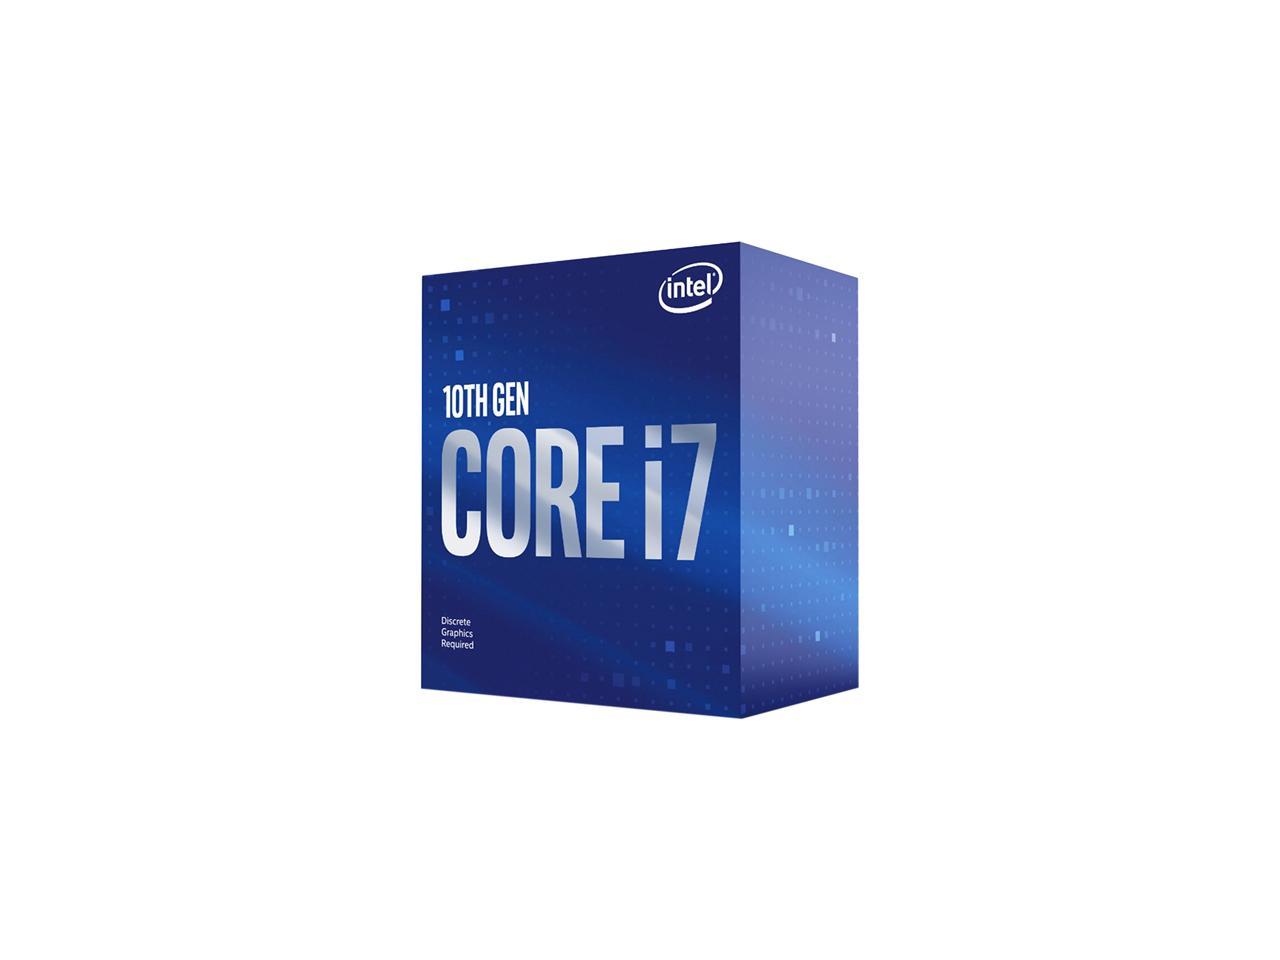 Intel Core i7-10700F - Core i7 10th Gen Comet Lake 8-Core 2.9 GHz 